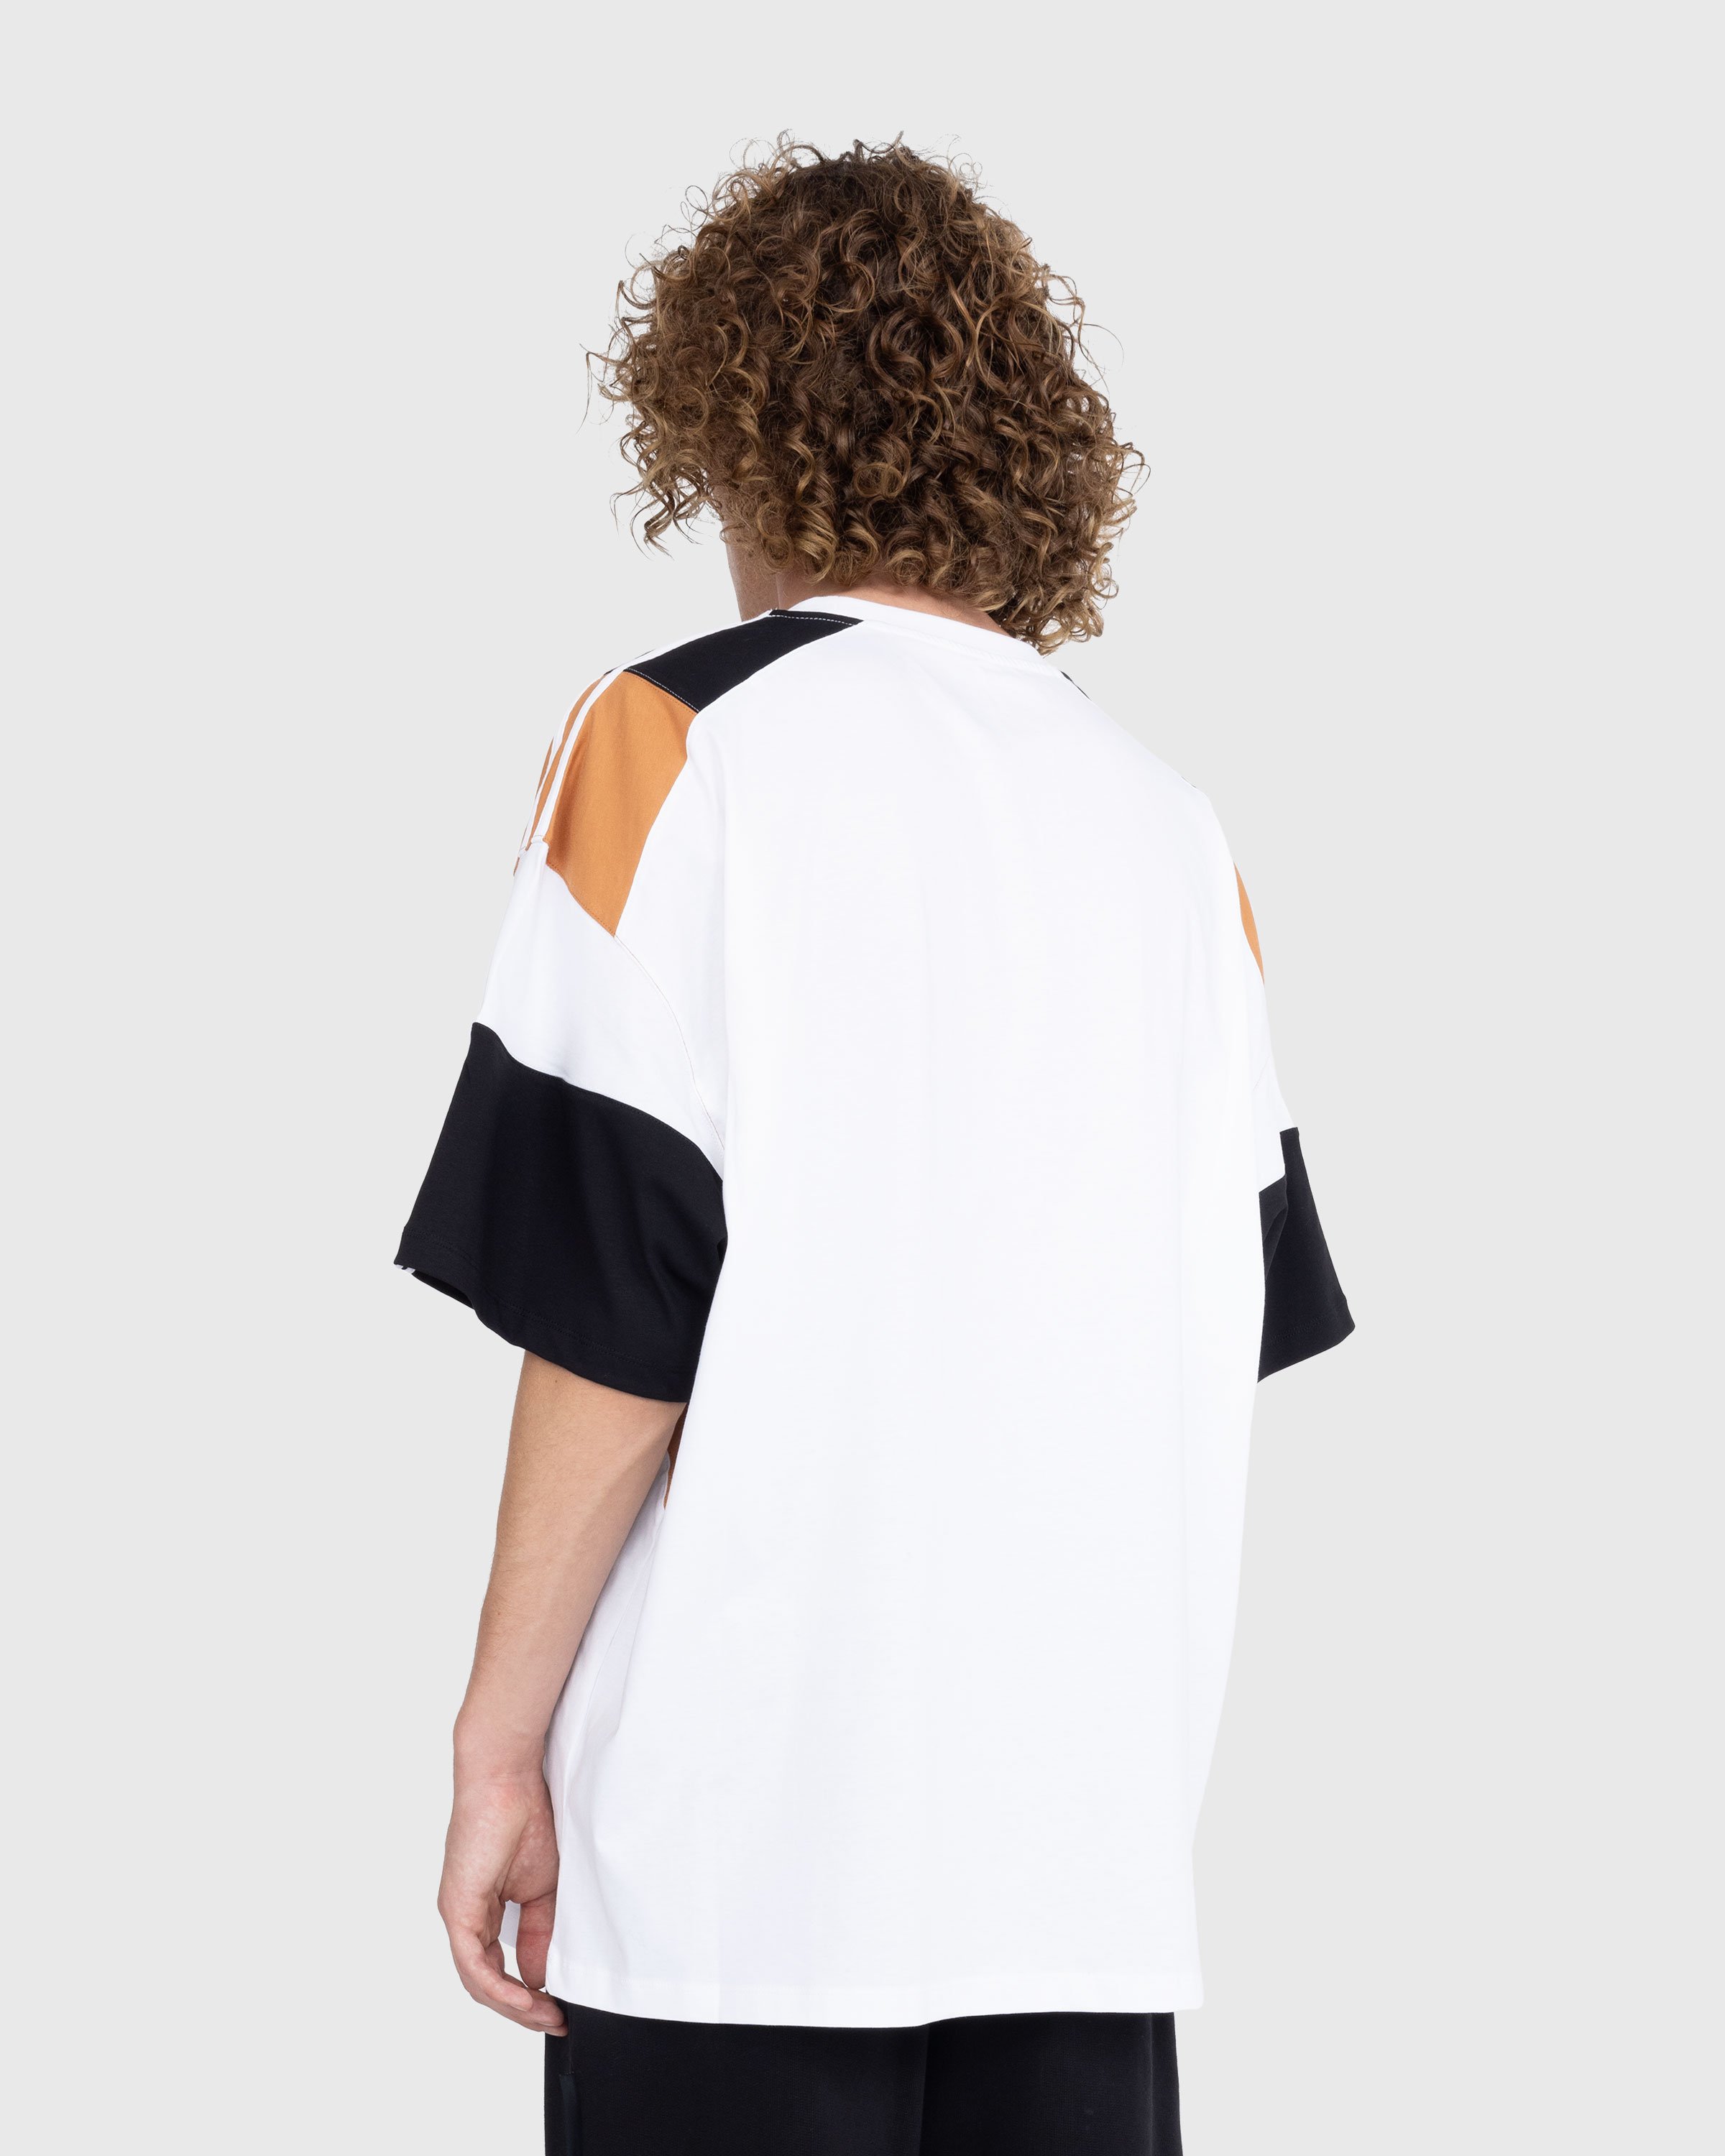 Martine Rose - Panelled Oversized T-Shirt White/Multi - Clothing - Multi - Image 3